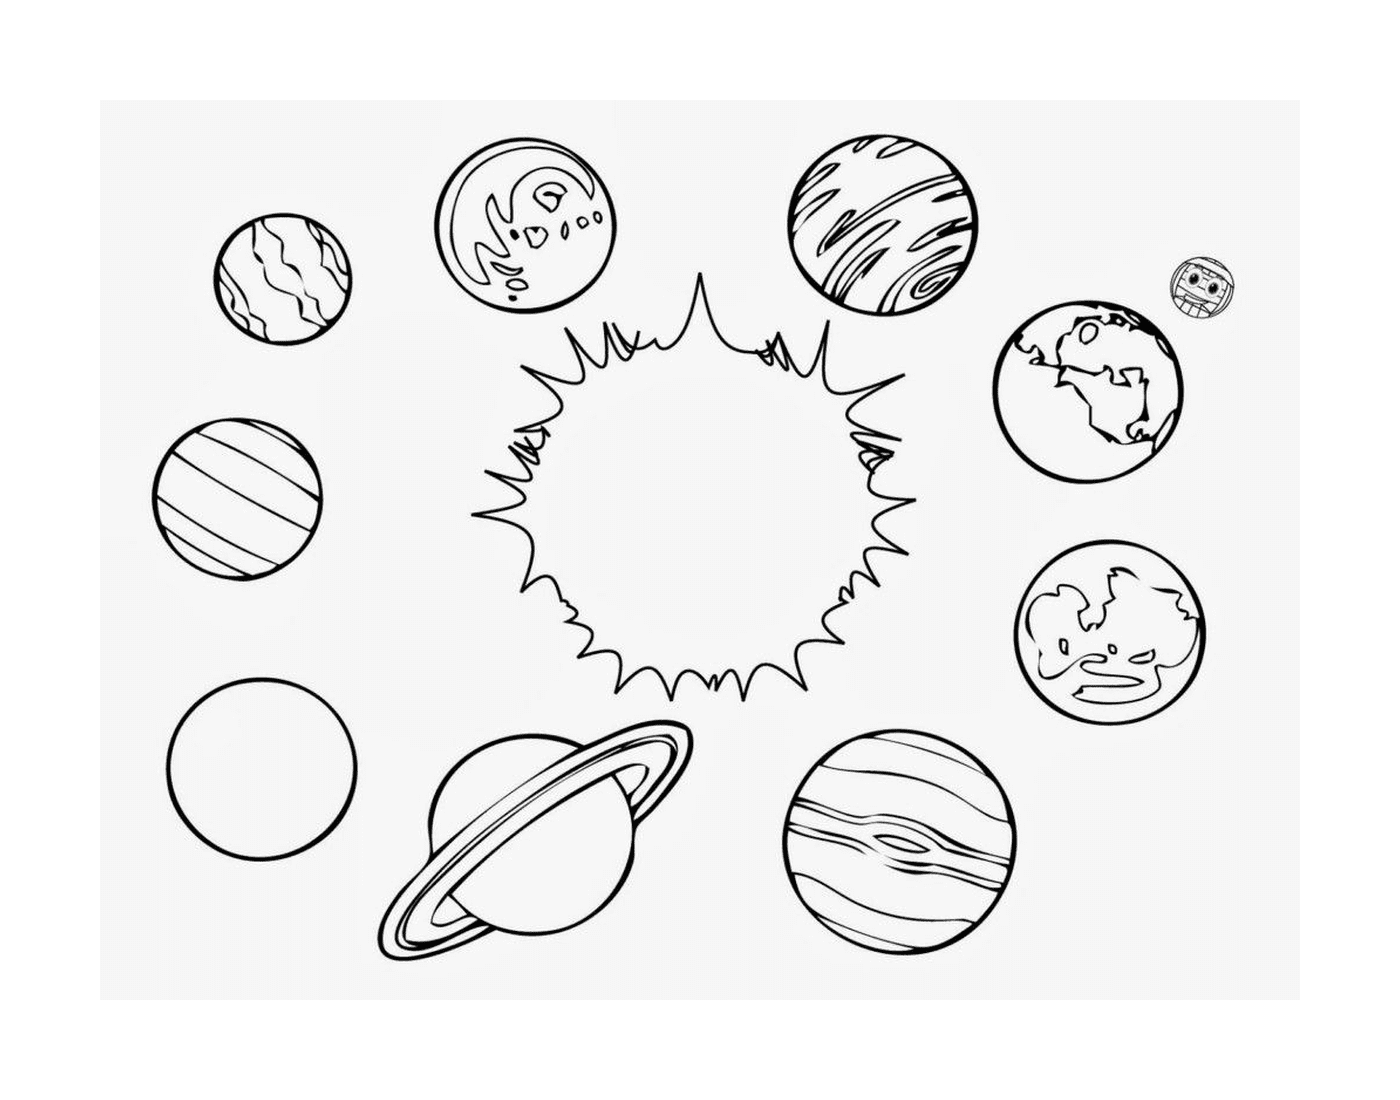  Группа планет в Солнечной системе 